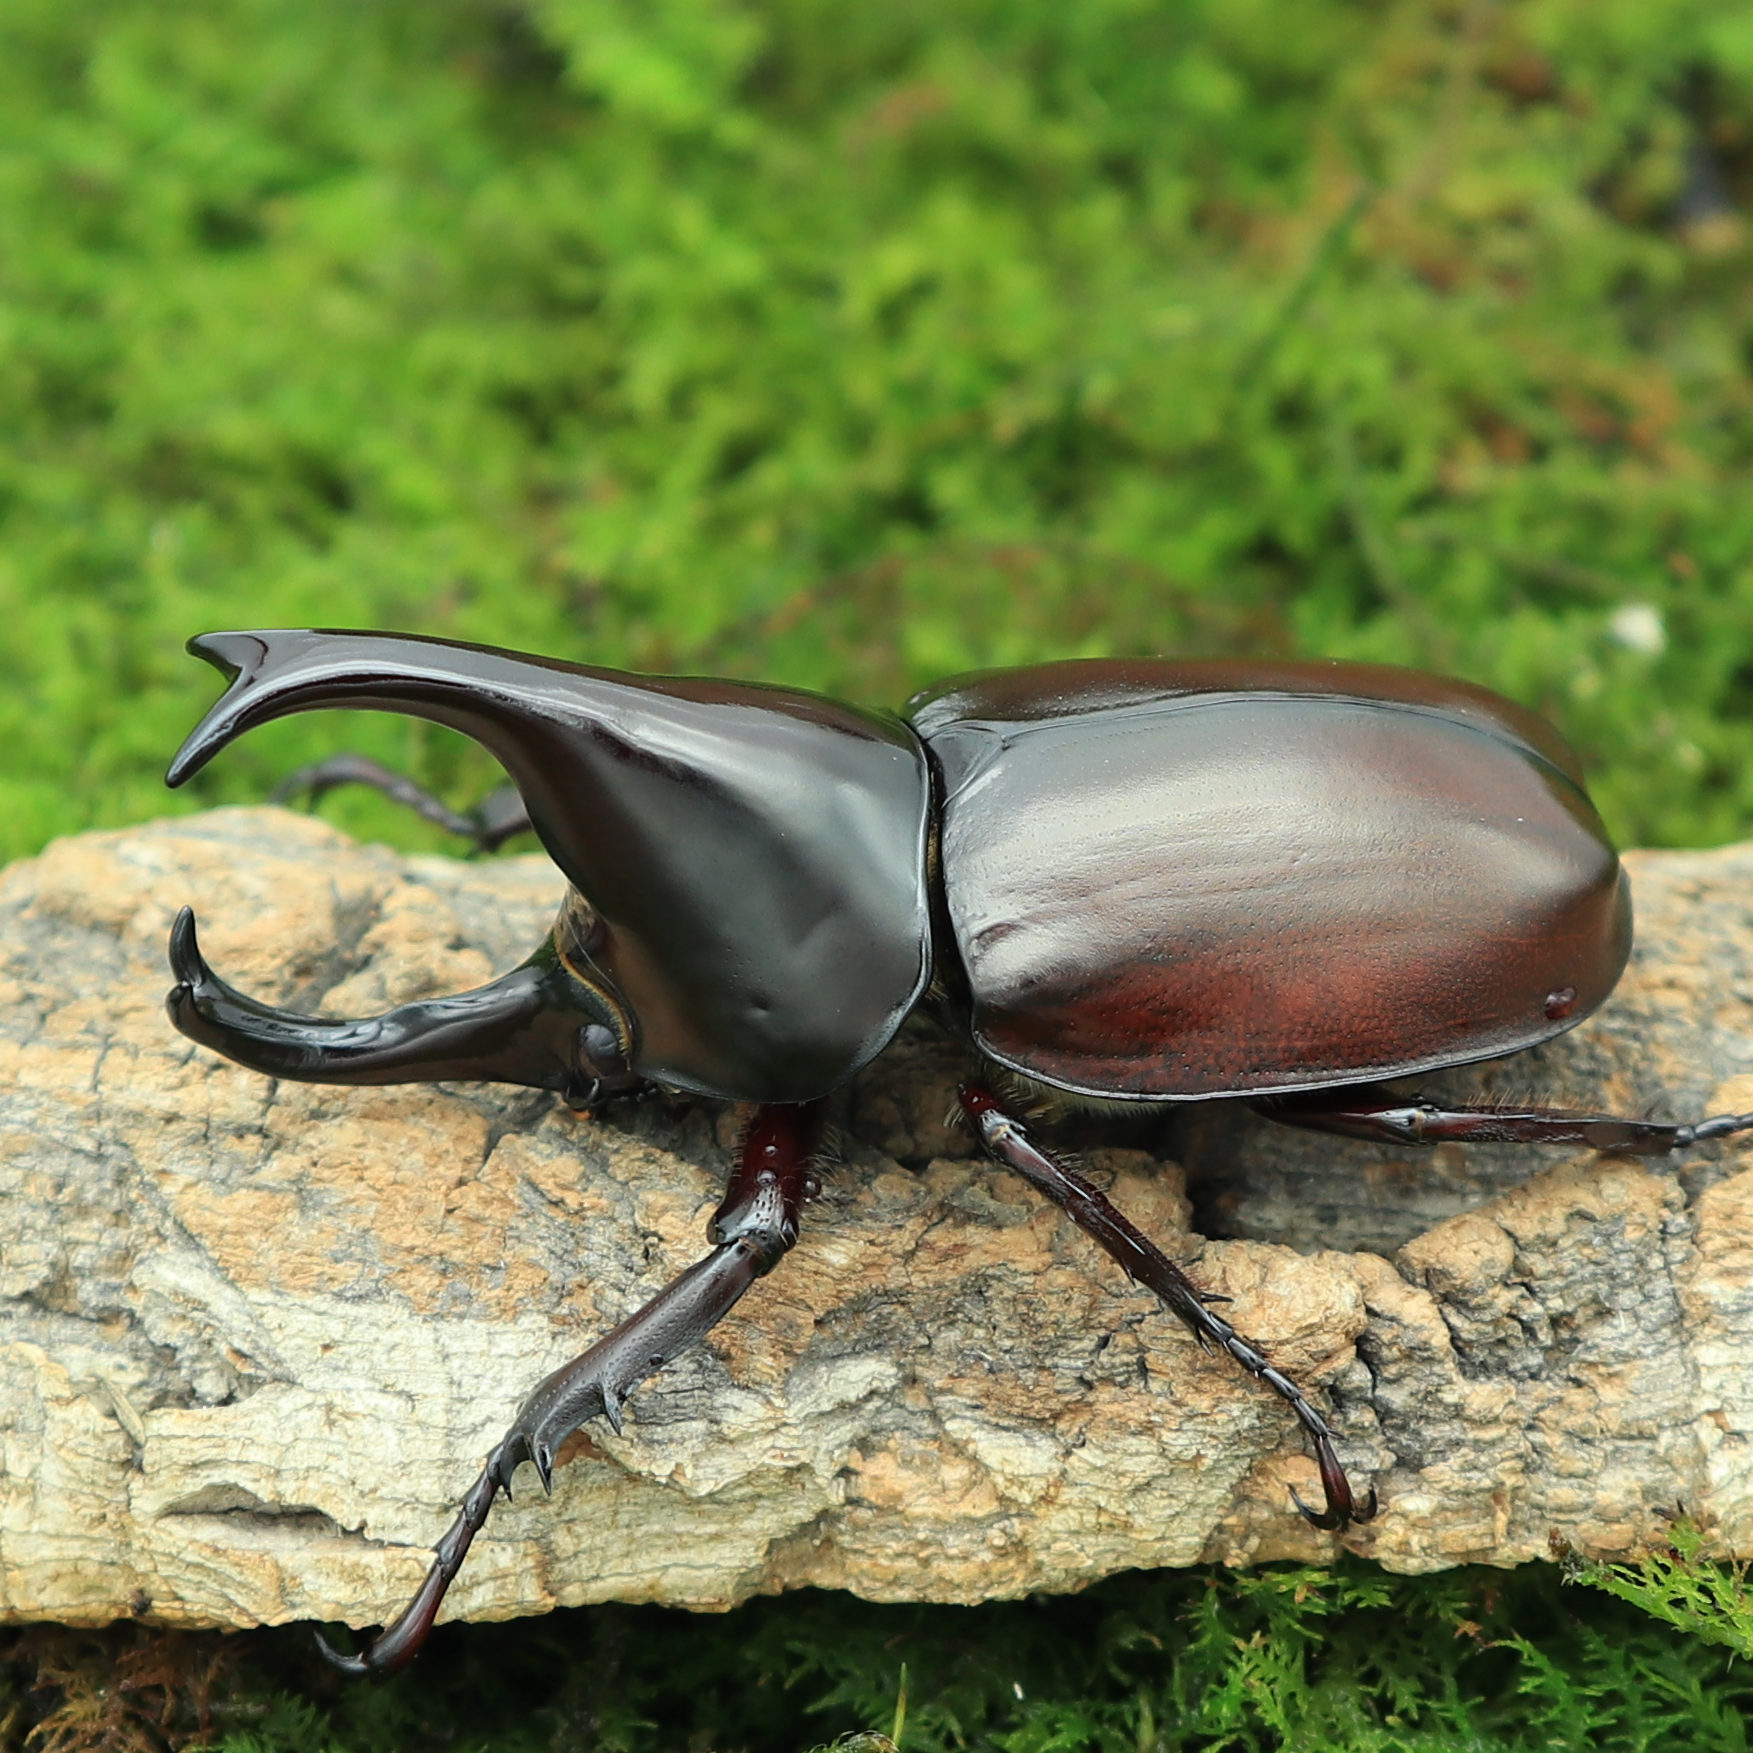 甲虫宠物 常见图片